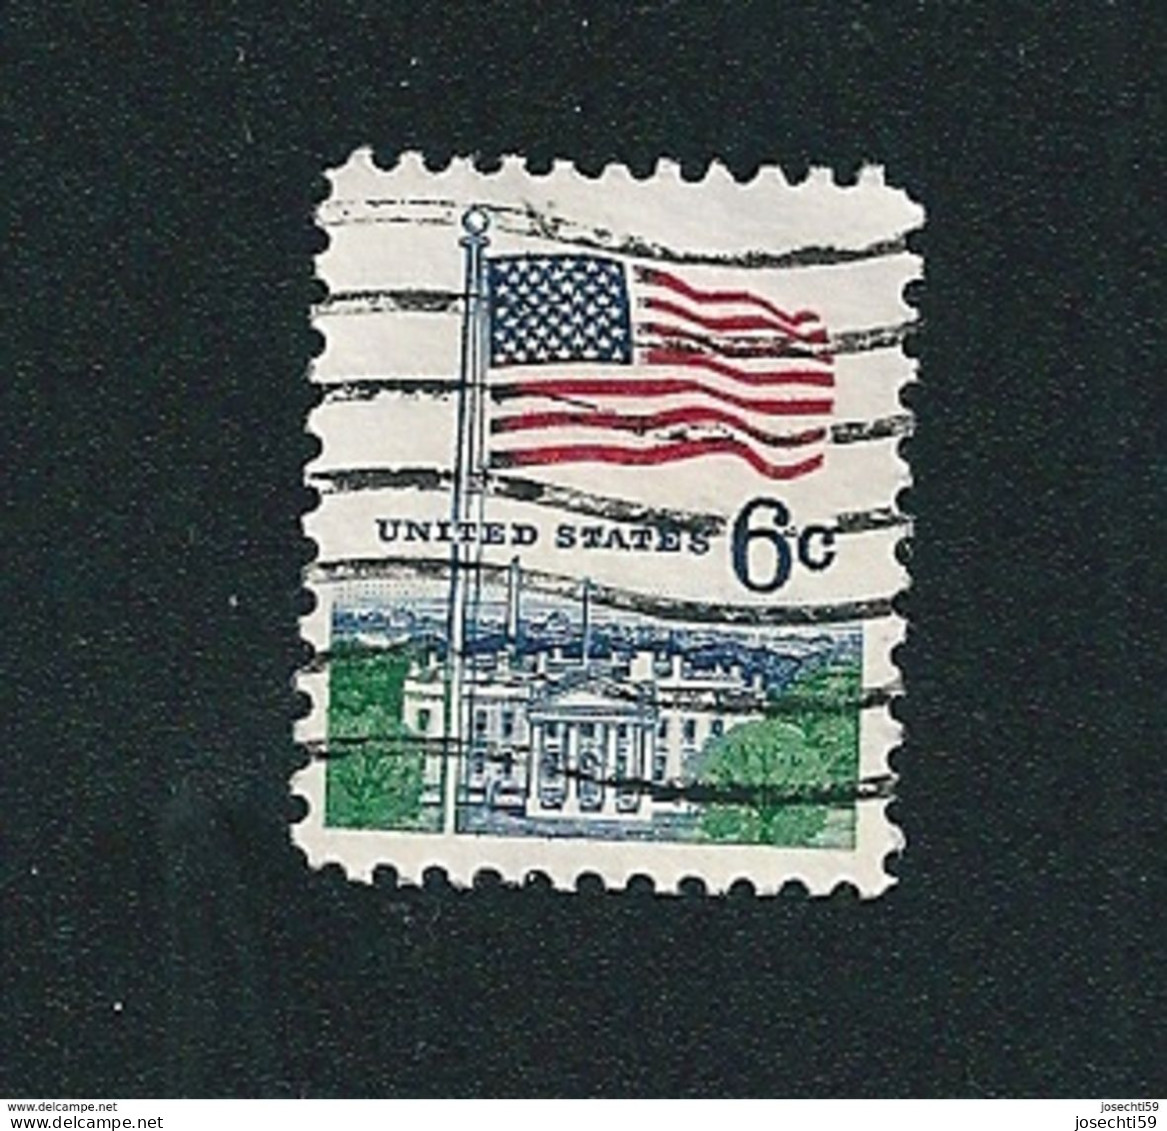 N° 842 Drapeau Et Maison Blanche    Stamp Etats Unis D' Amérique Timbre USA  (1967) - Used Stamps